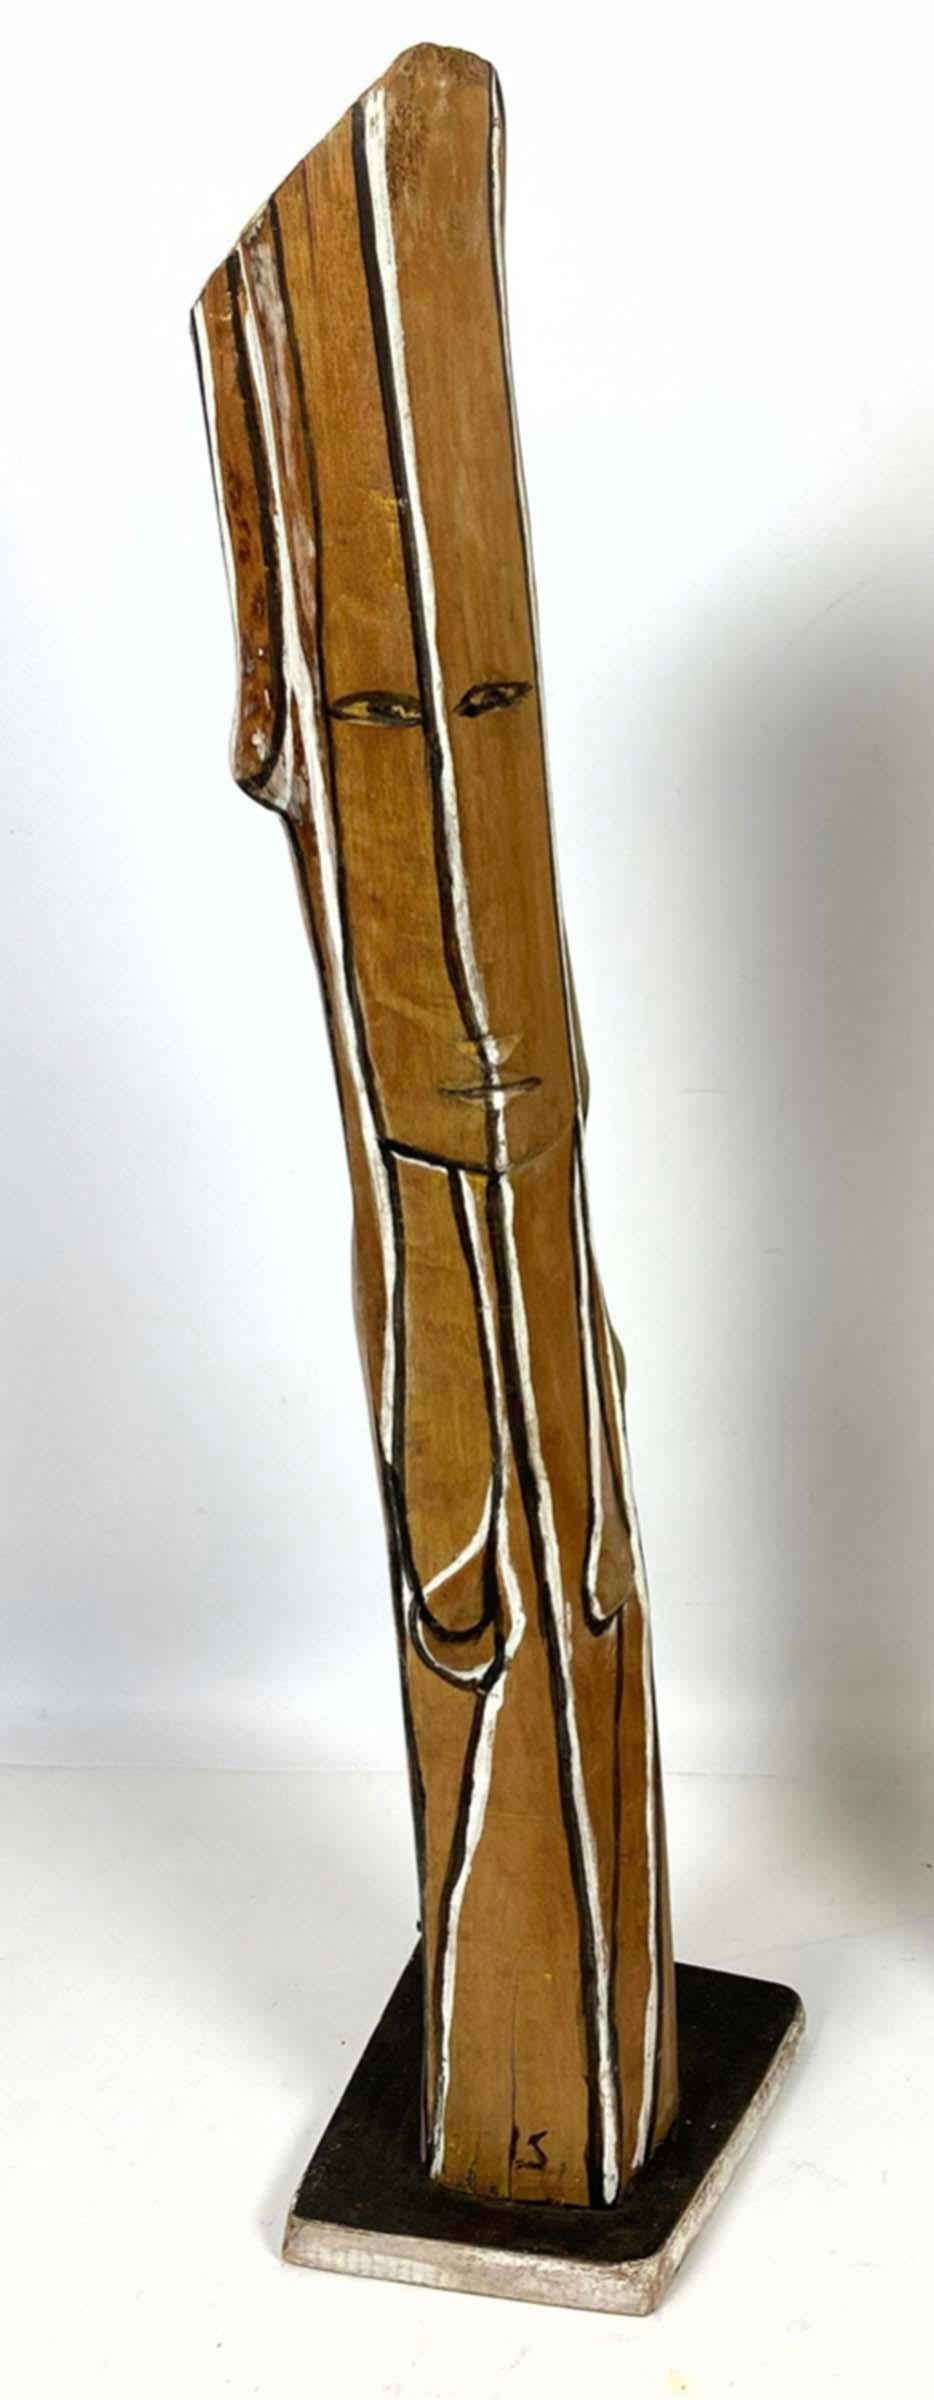 Modernist Woman - Sculpture by ITZHAK SANKOWSKY